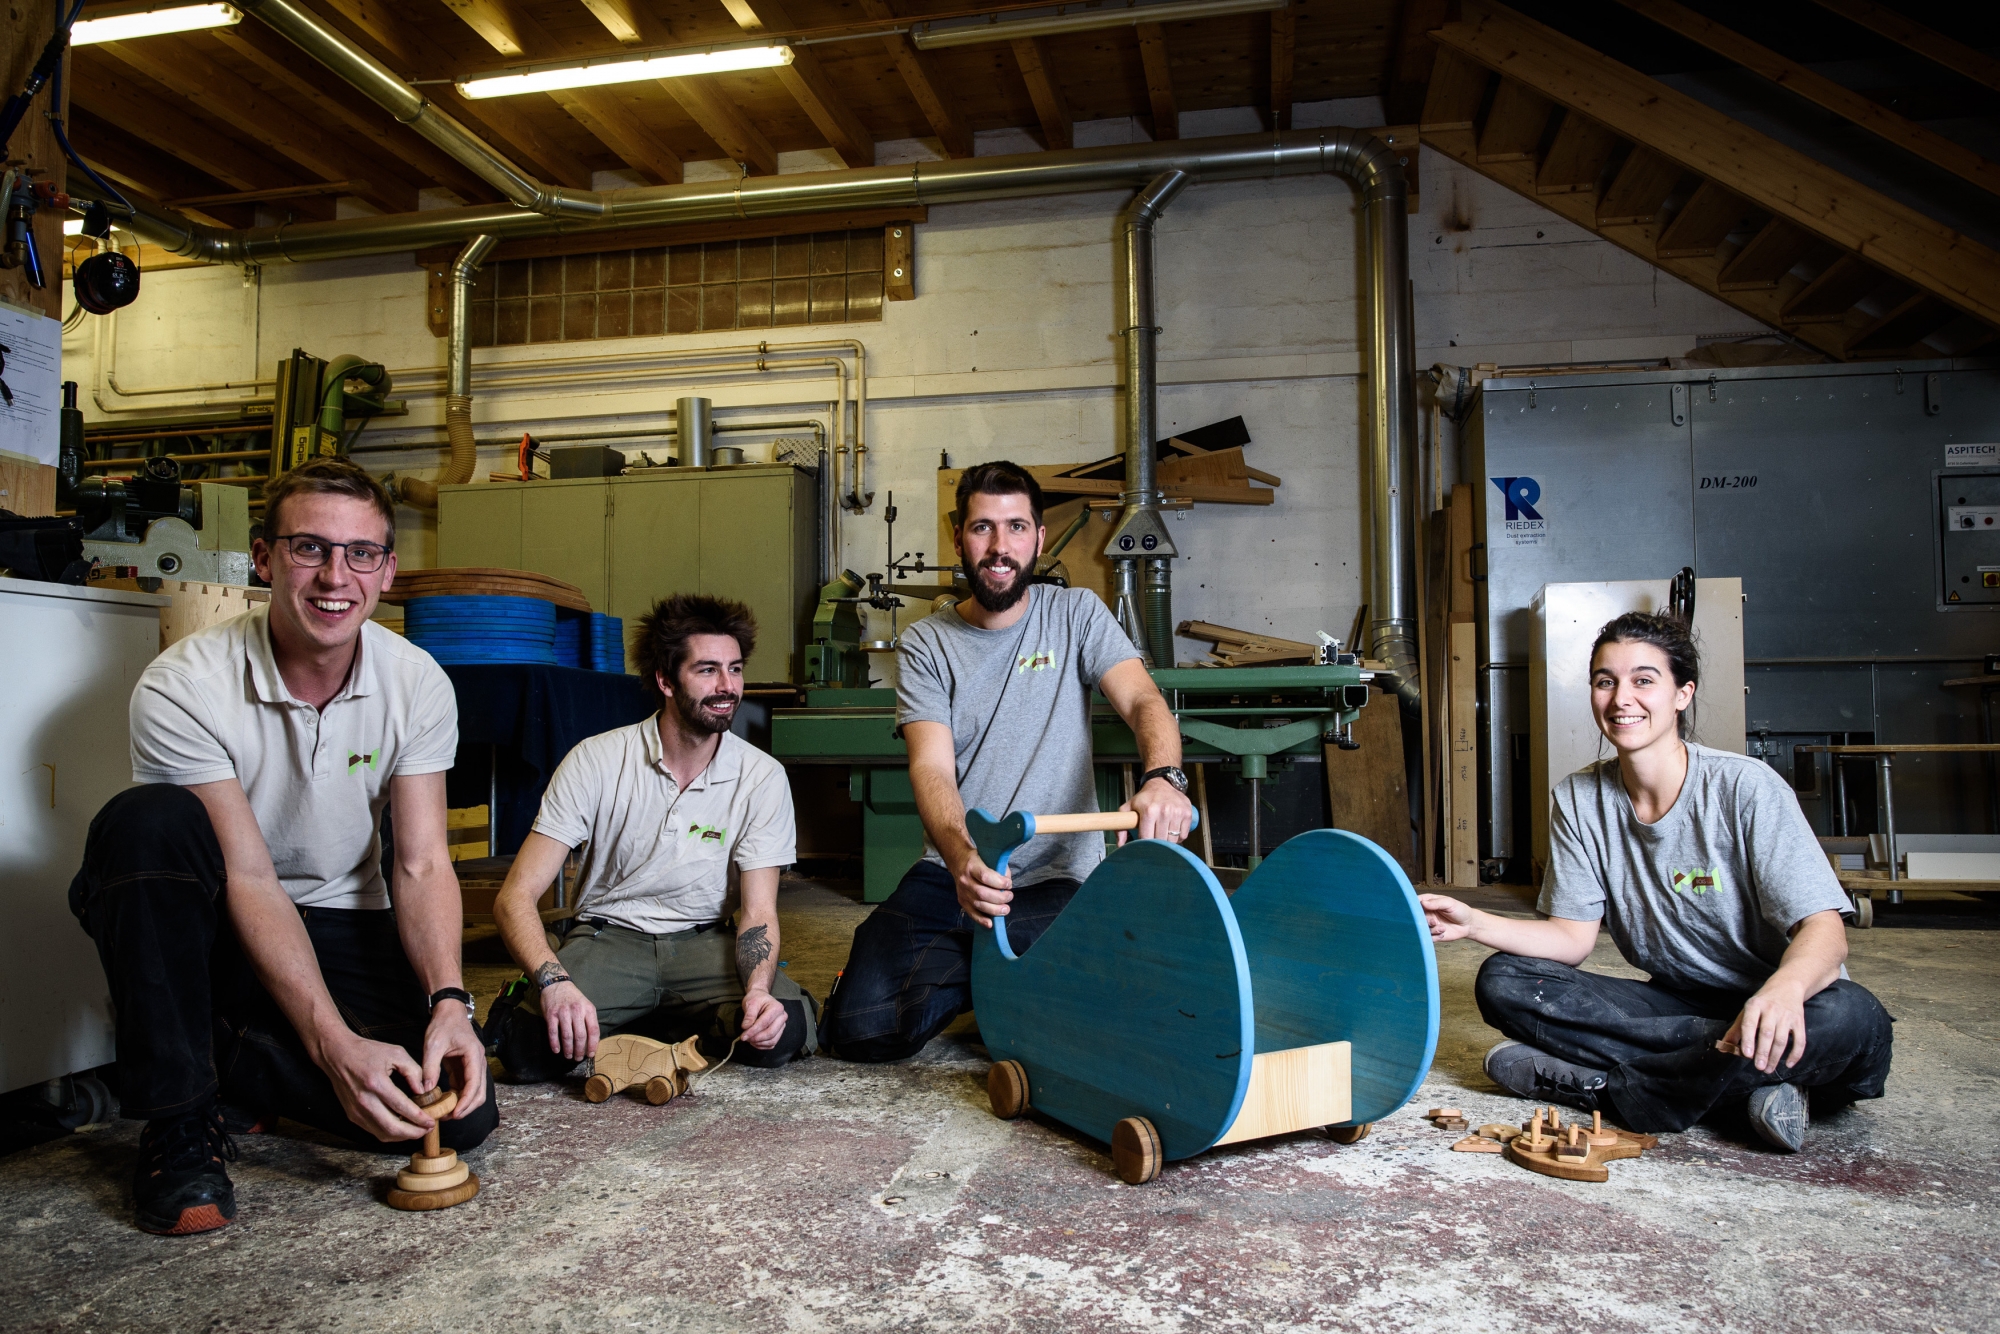 A l'entreprise MH Bois, on fabrique des jouets pour enfants. De gauche à droite: Bastien Morax (associé), Stan Lartigue, Yoann Humbert (associé), et Sandrine Huck